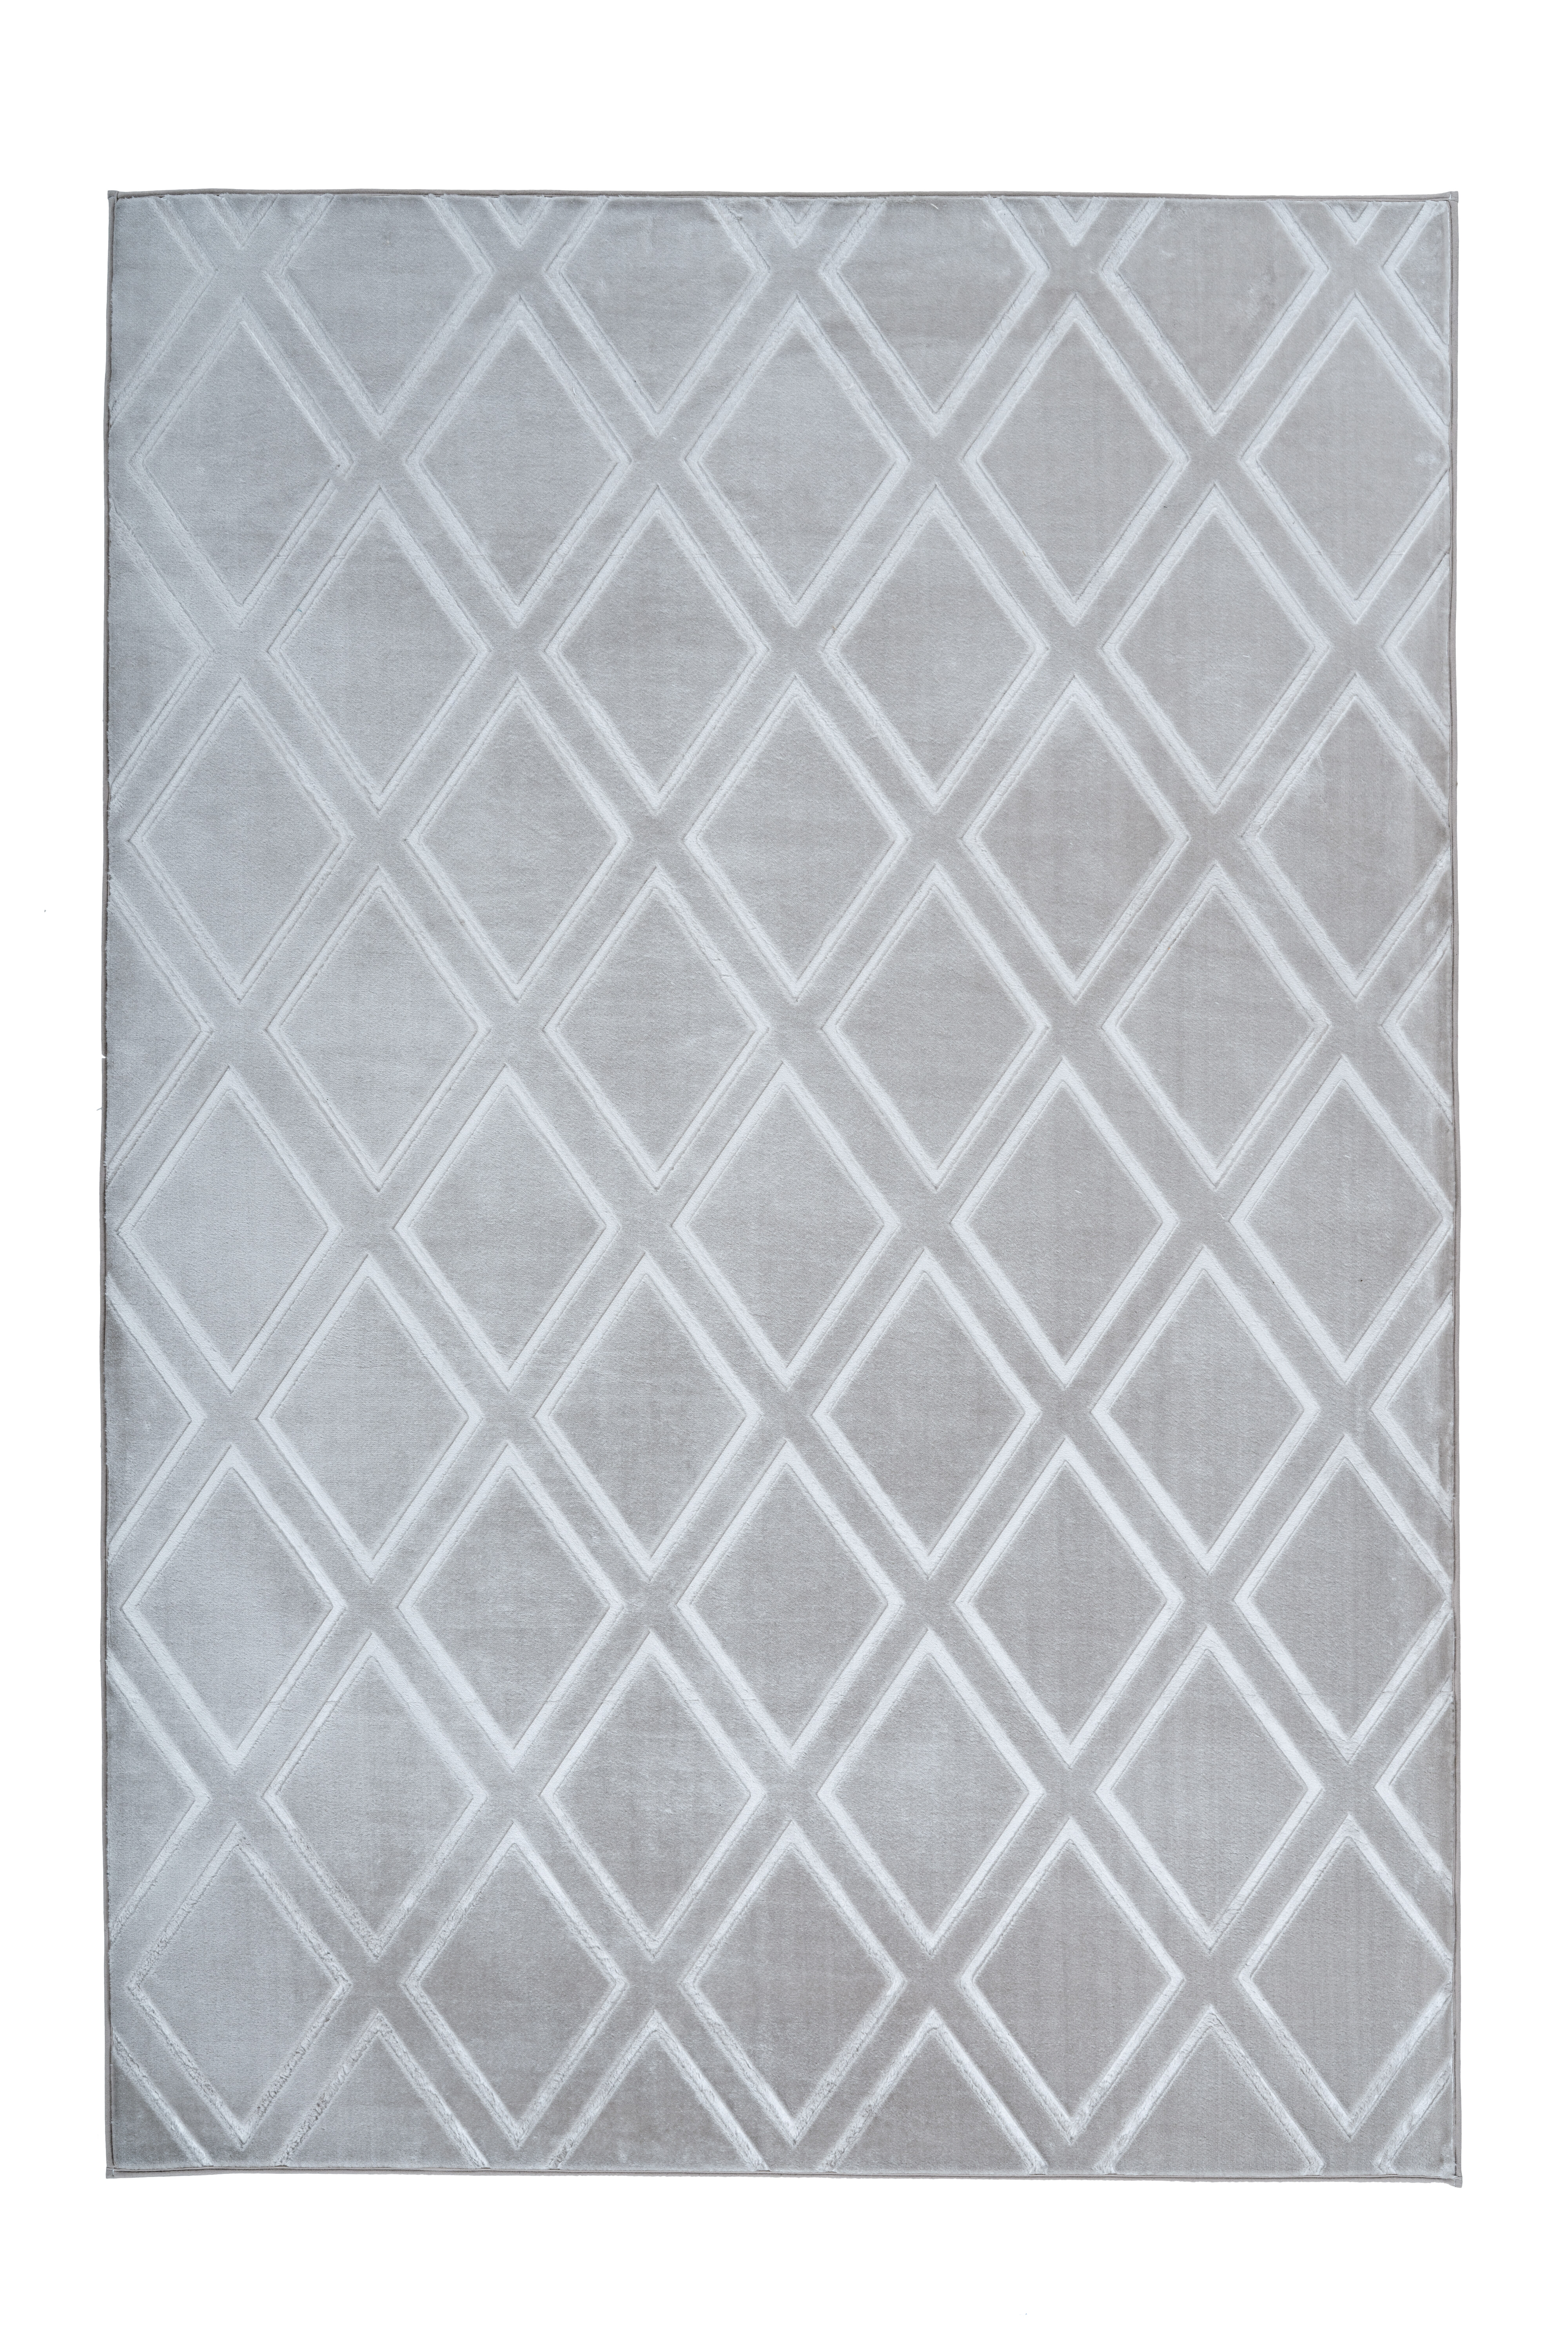 Kayoom Vloerkleed 'Monroe 300' kleur grijs, 200 x 290cm